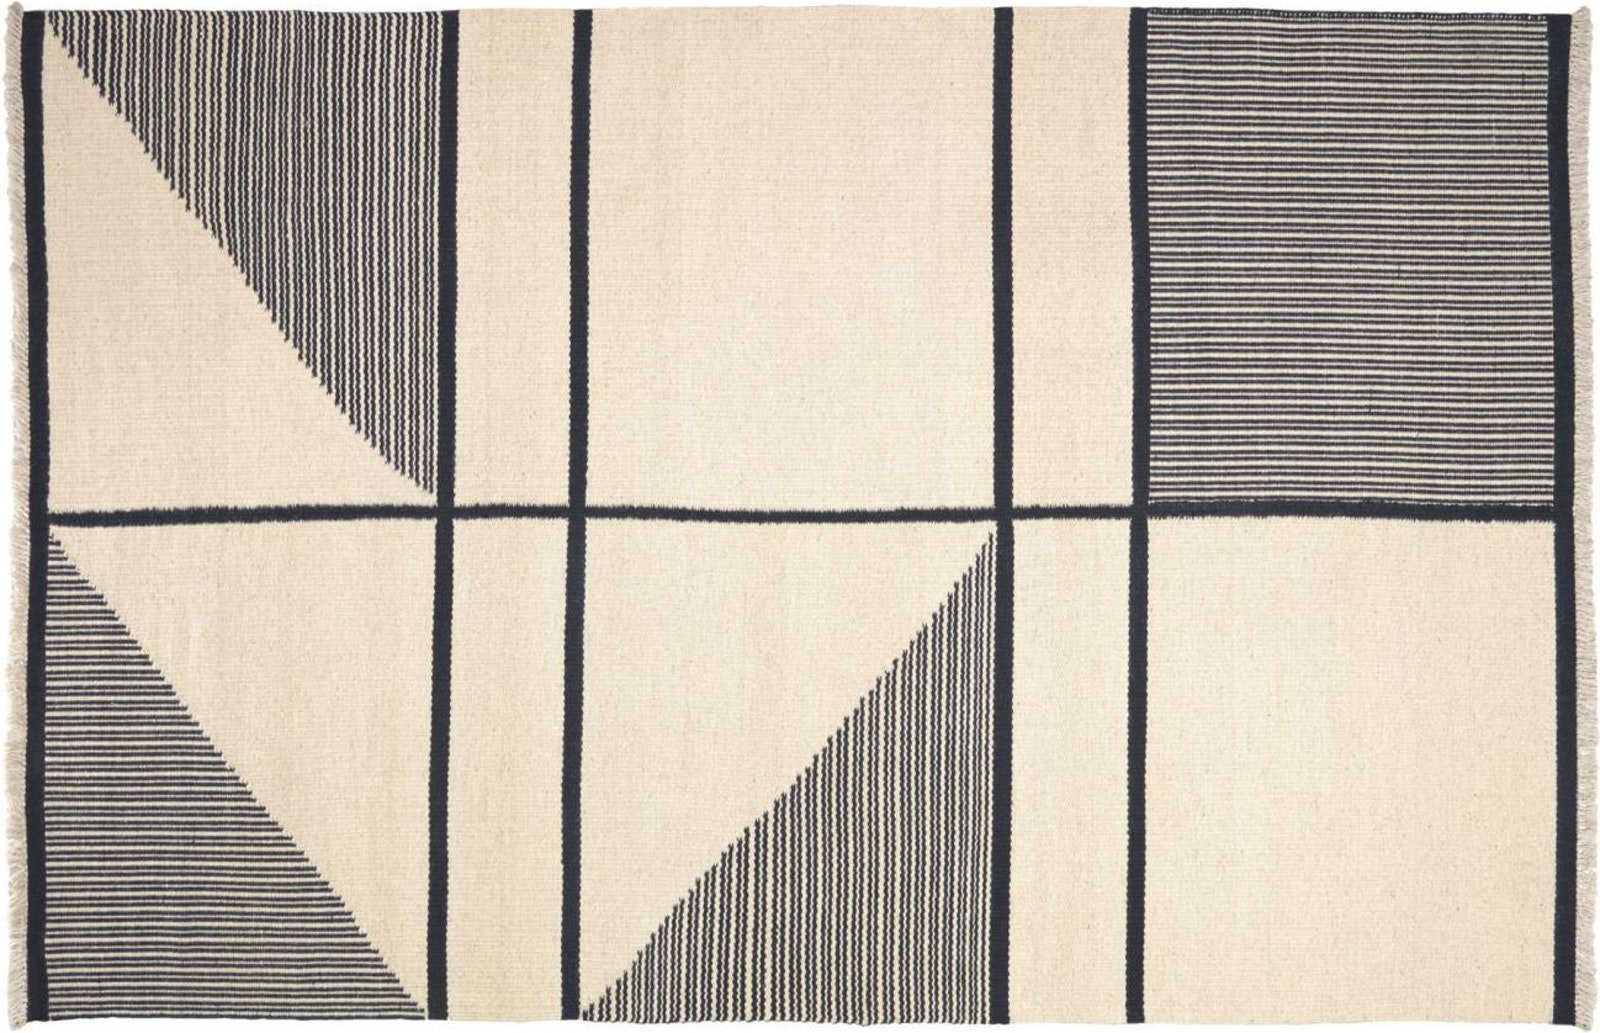 5: Bernardine, Tæppe, nordisk, moderne, stof by LaForma (H: 1 cm. B: 160 cm. L: 230 cm., Beige/sort)